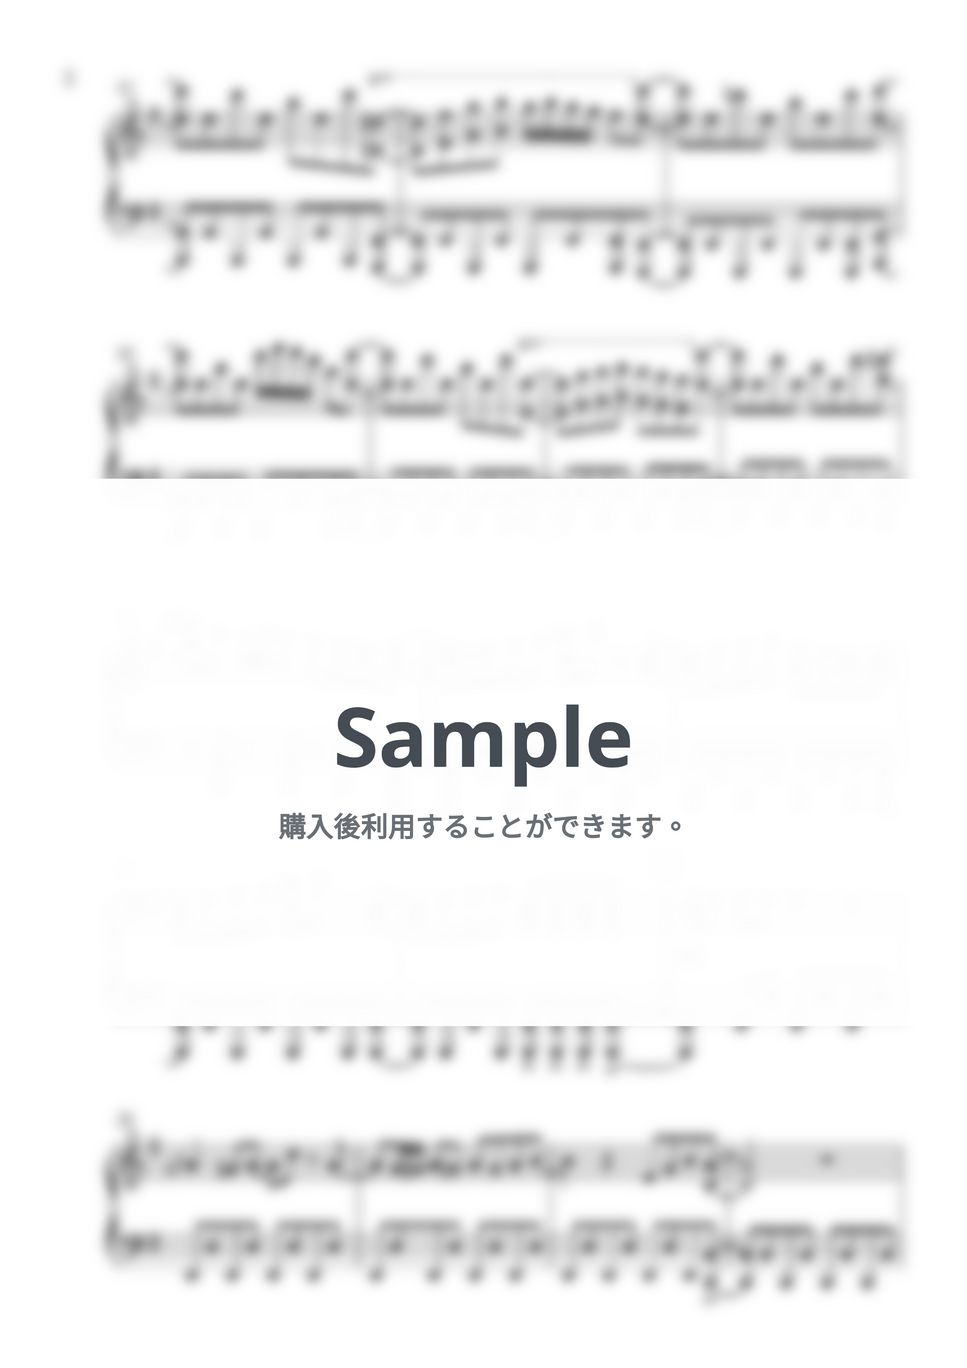 まふまふ - 自壊プログラム (ピアノソロ) by しぐ (JunkMaker)